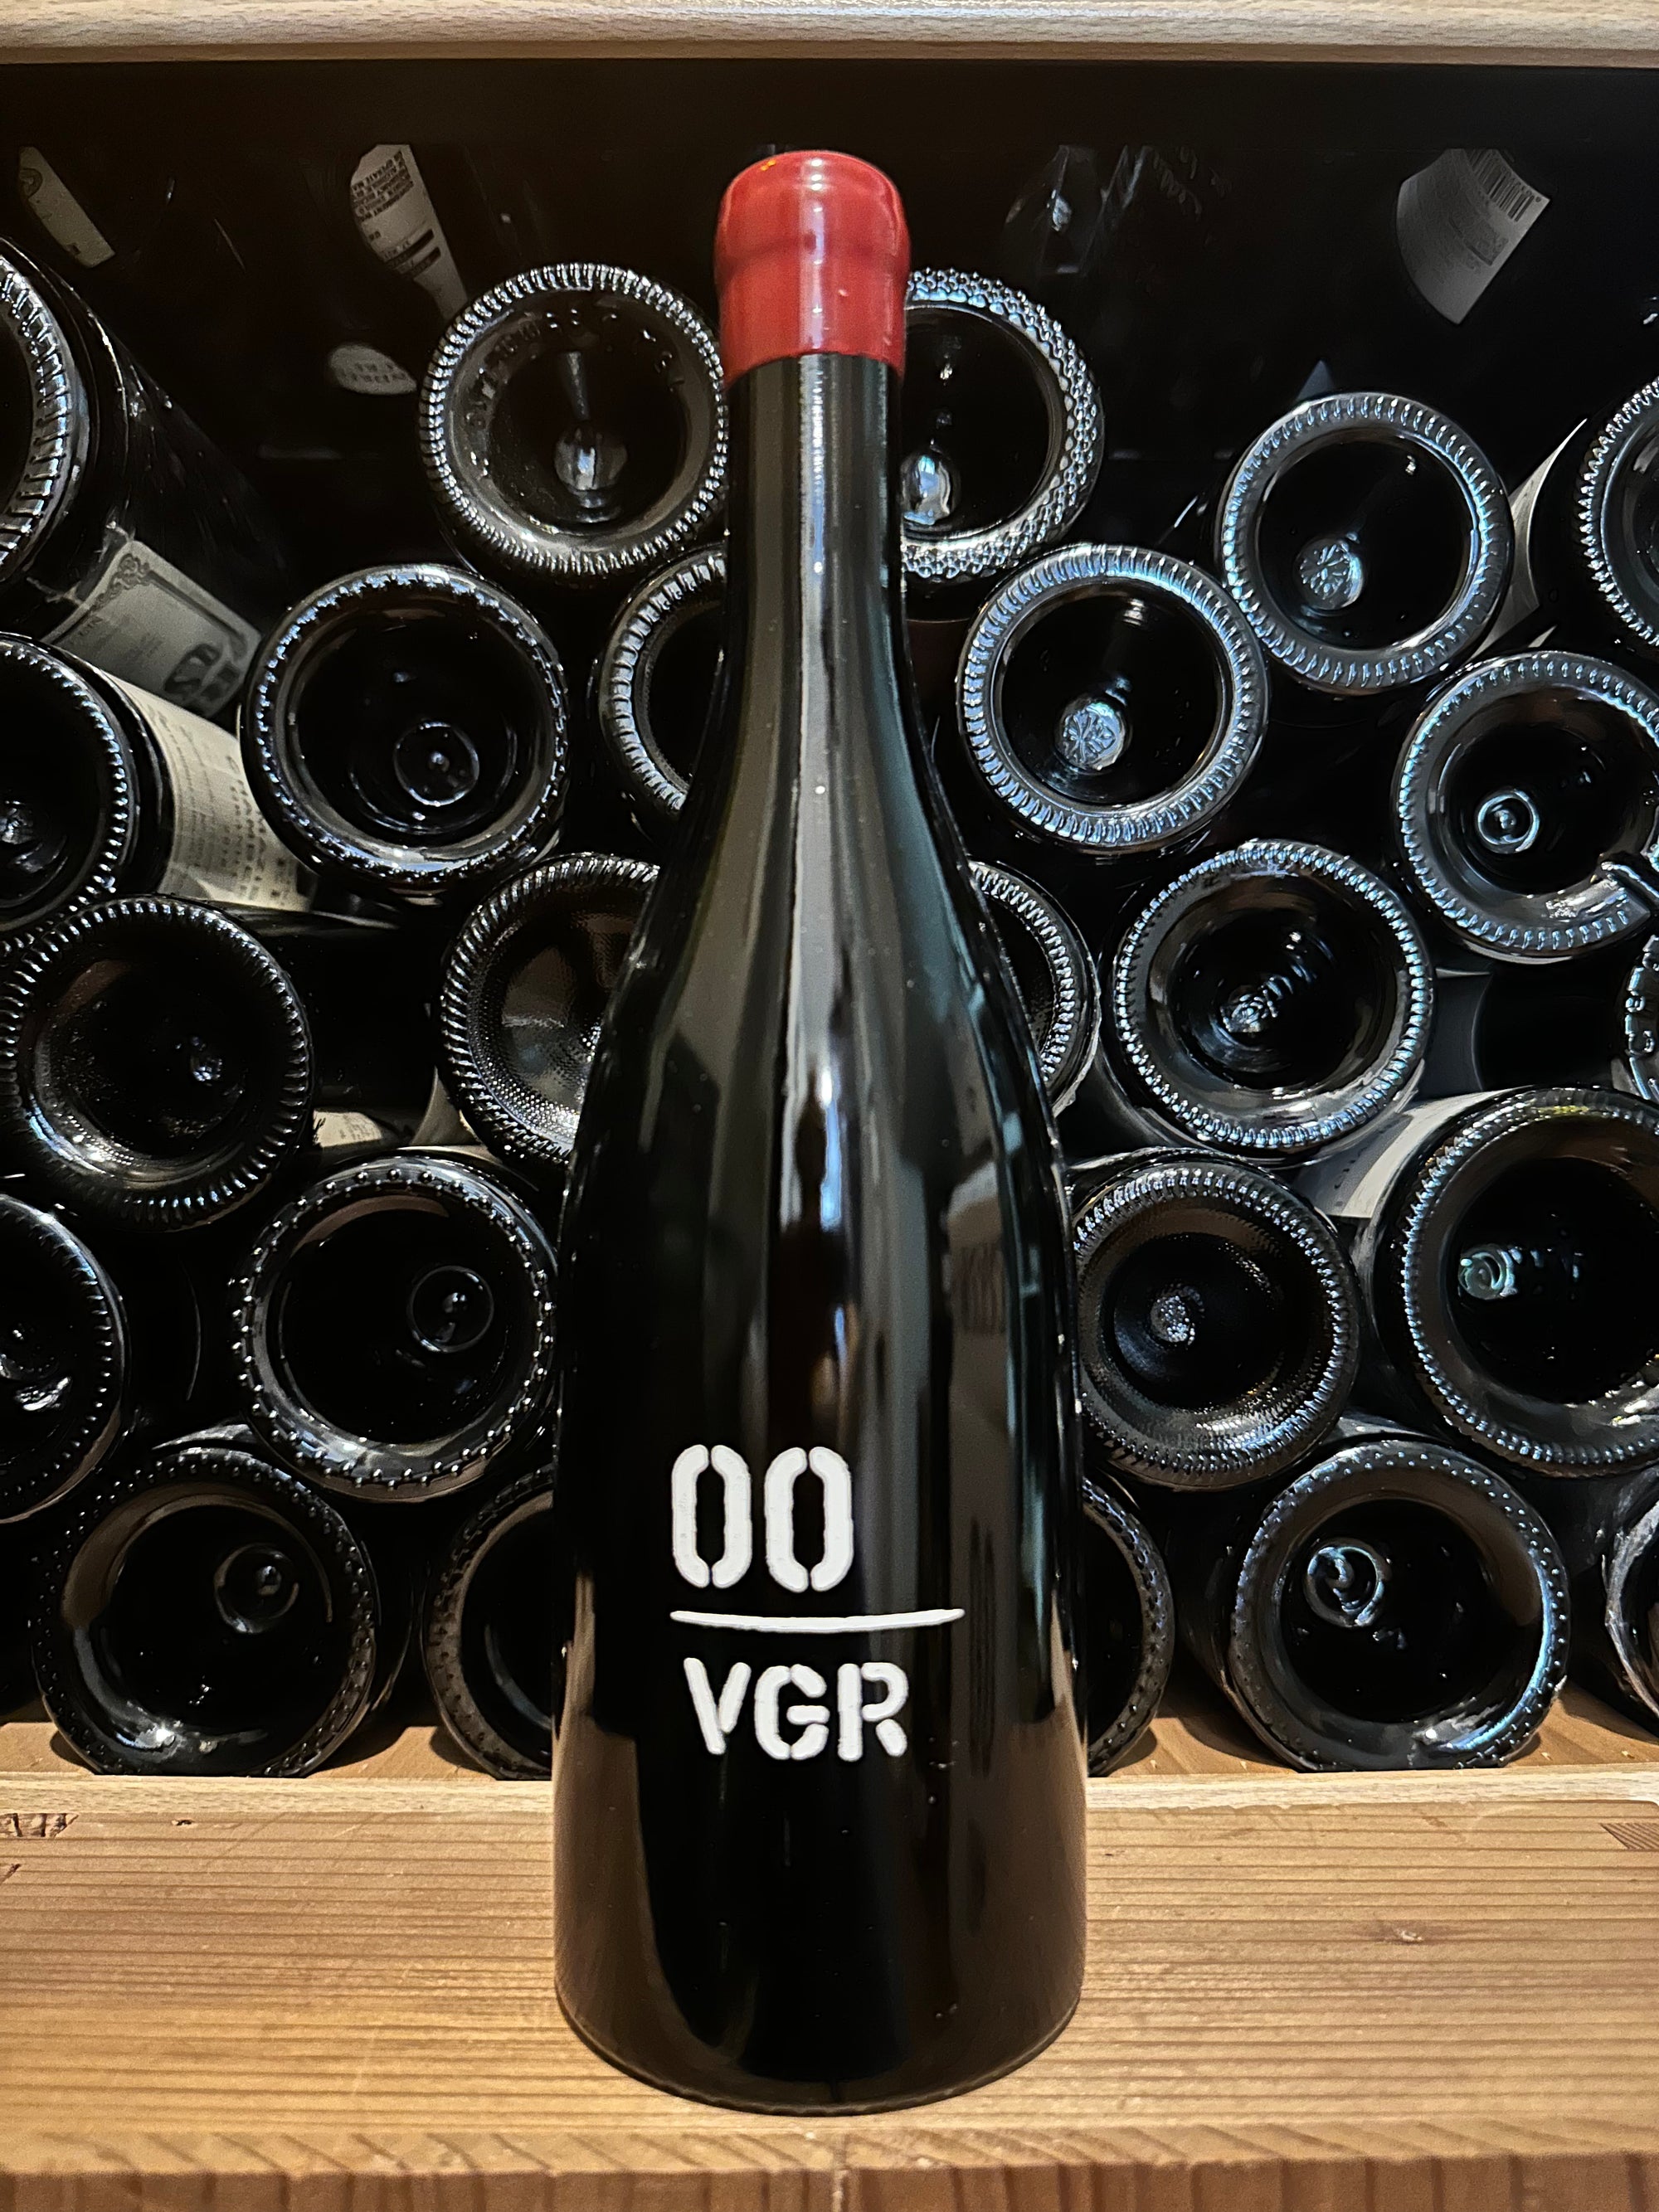 00 "Double Zero" Wines VGR Pinot Noir, Willamette Valley 2021